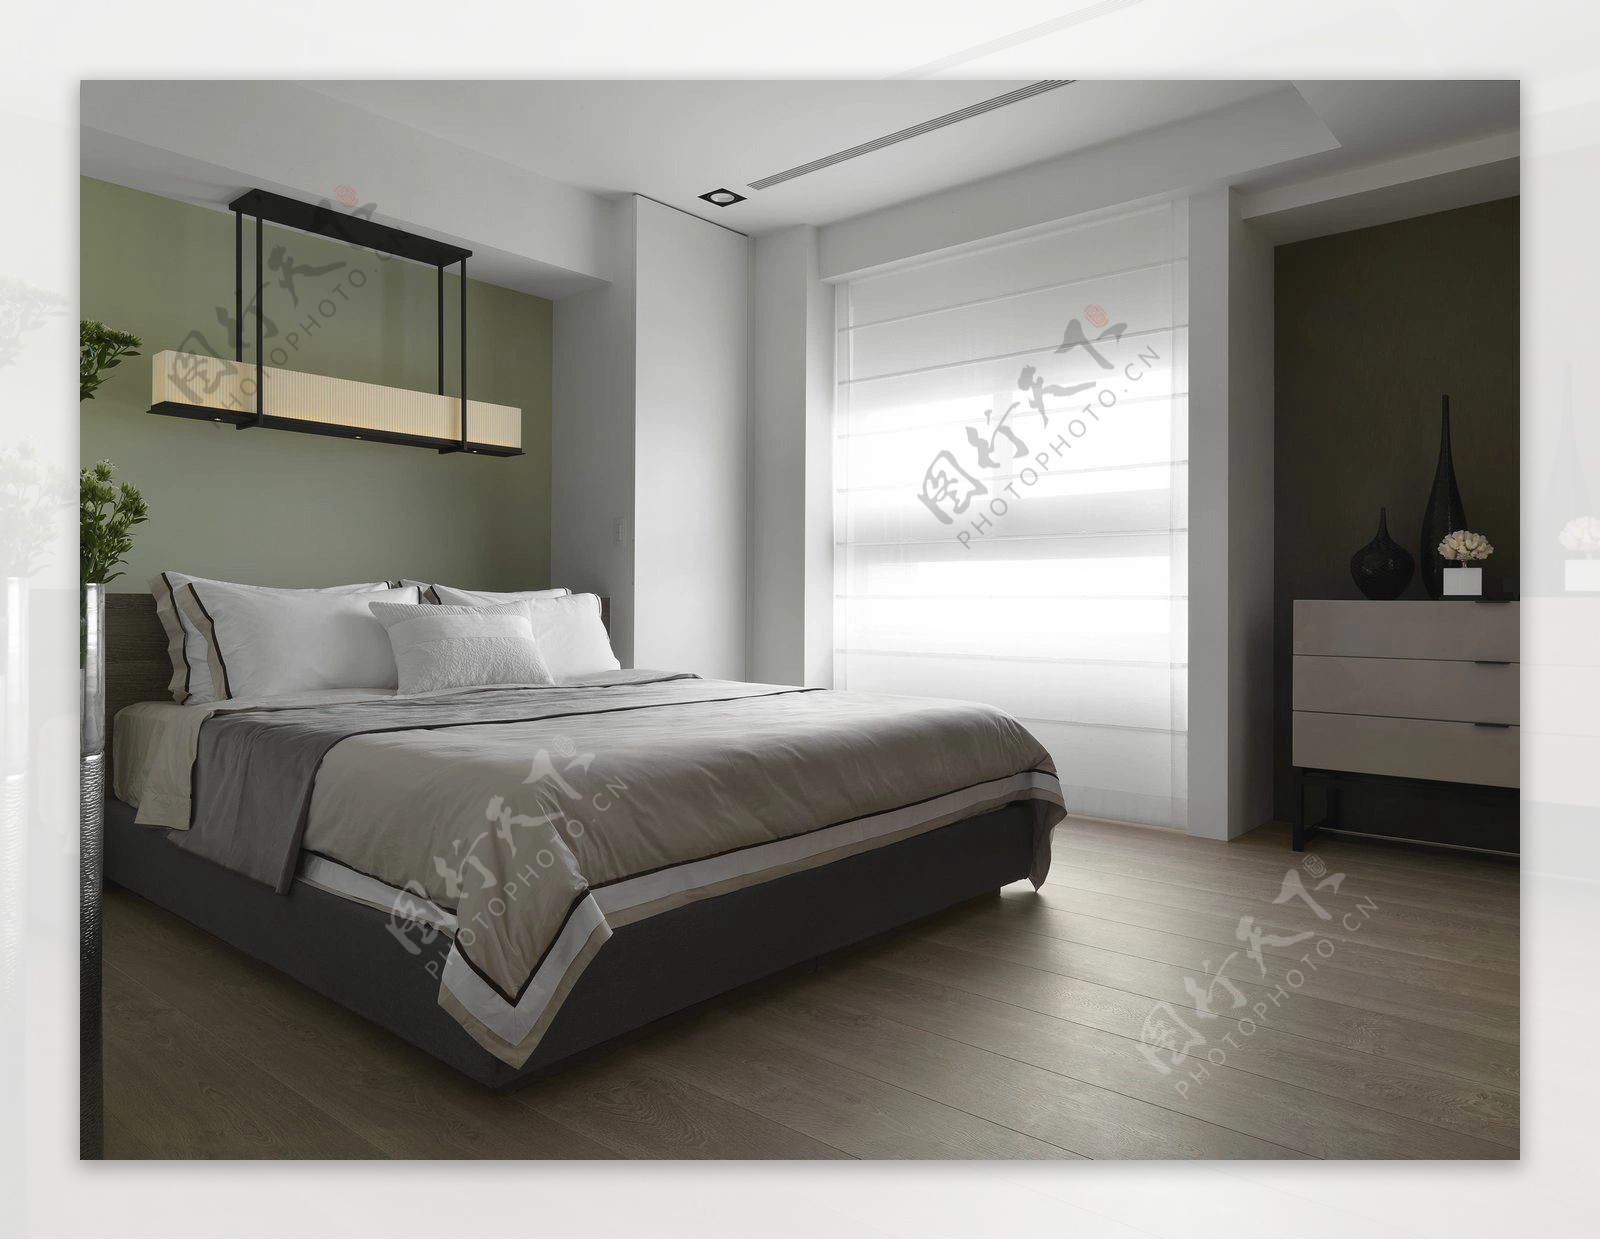 简约卧室床头绿色背景装修效果图